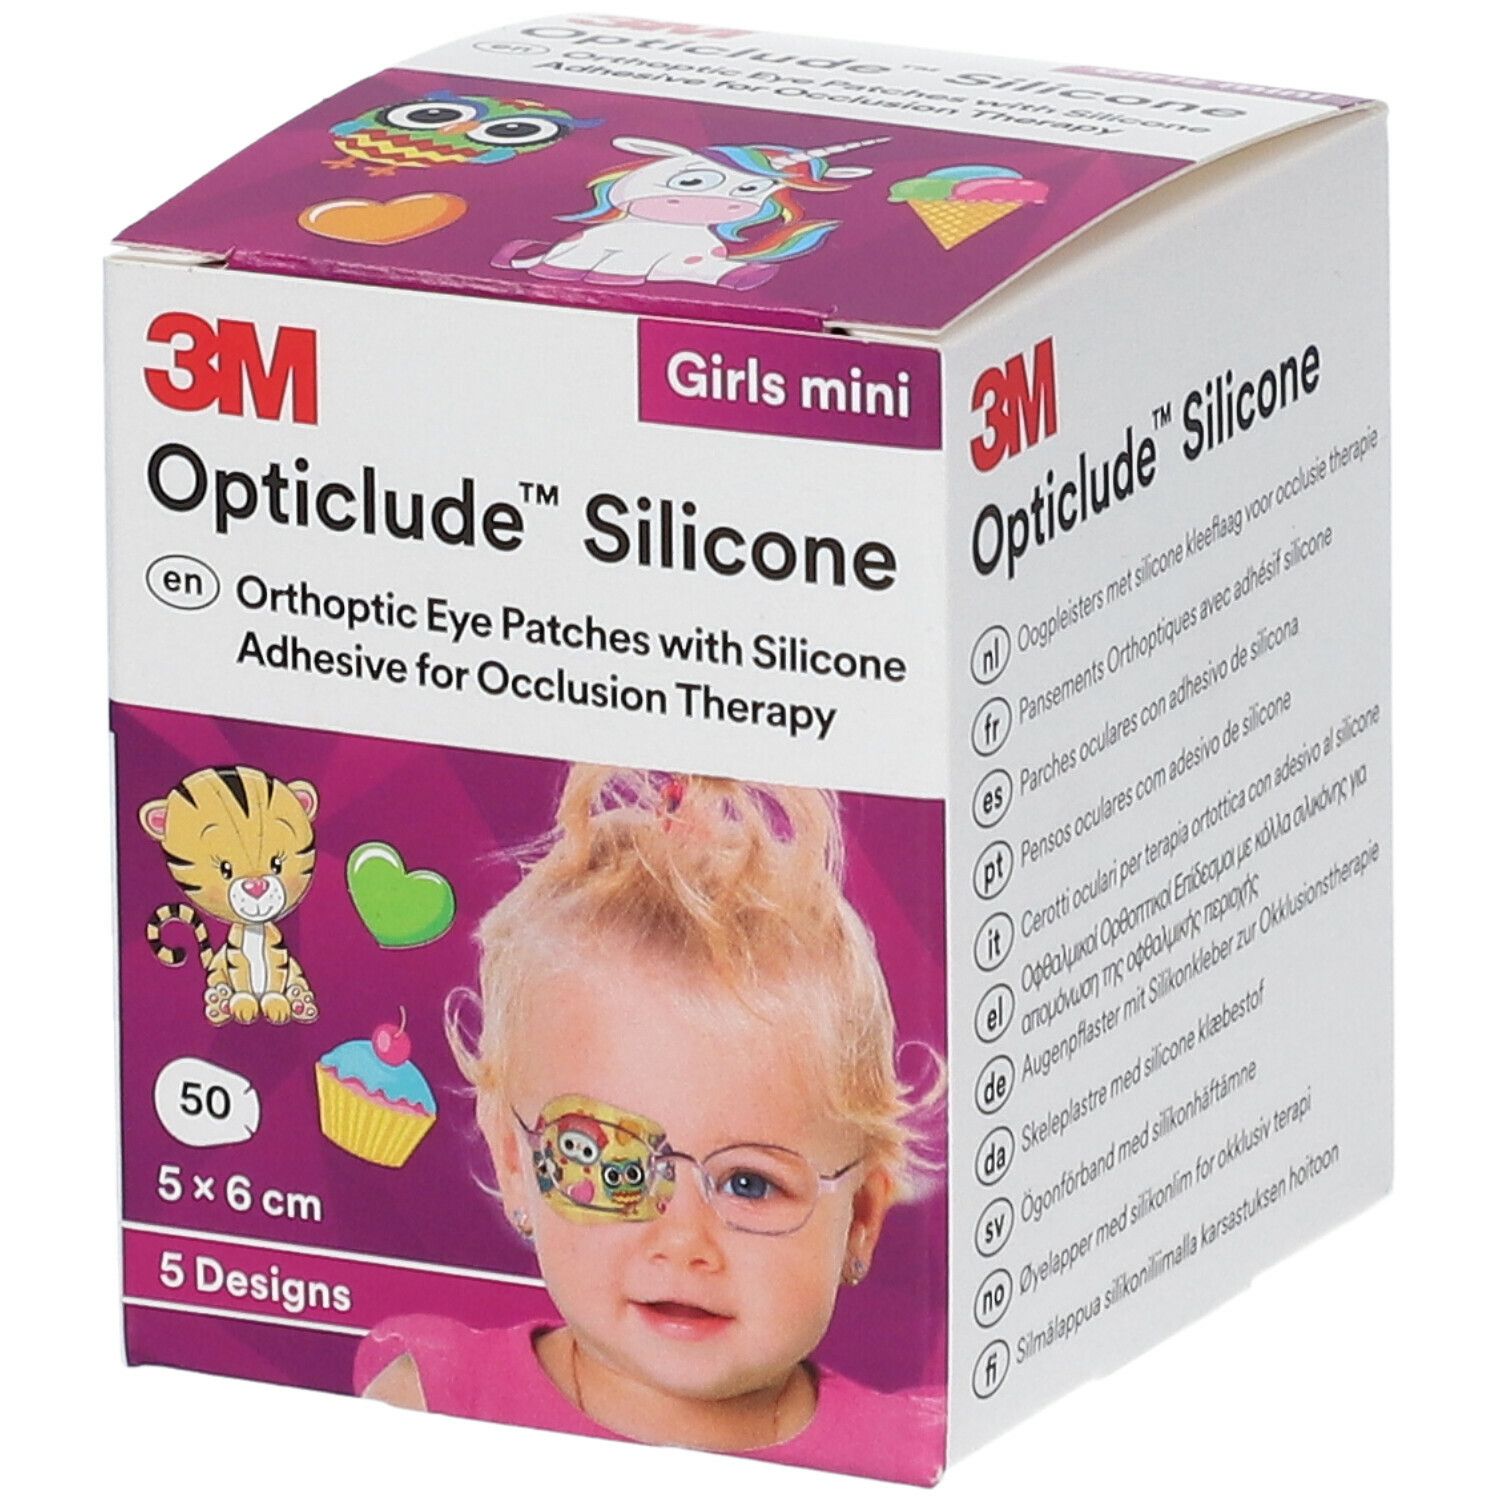 3M™ Opticlude™ Silicone Girl Mini 5,0 x 6,0 cm